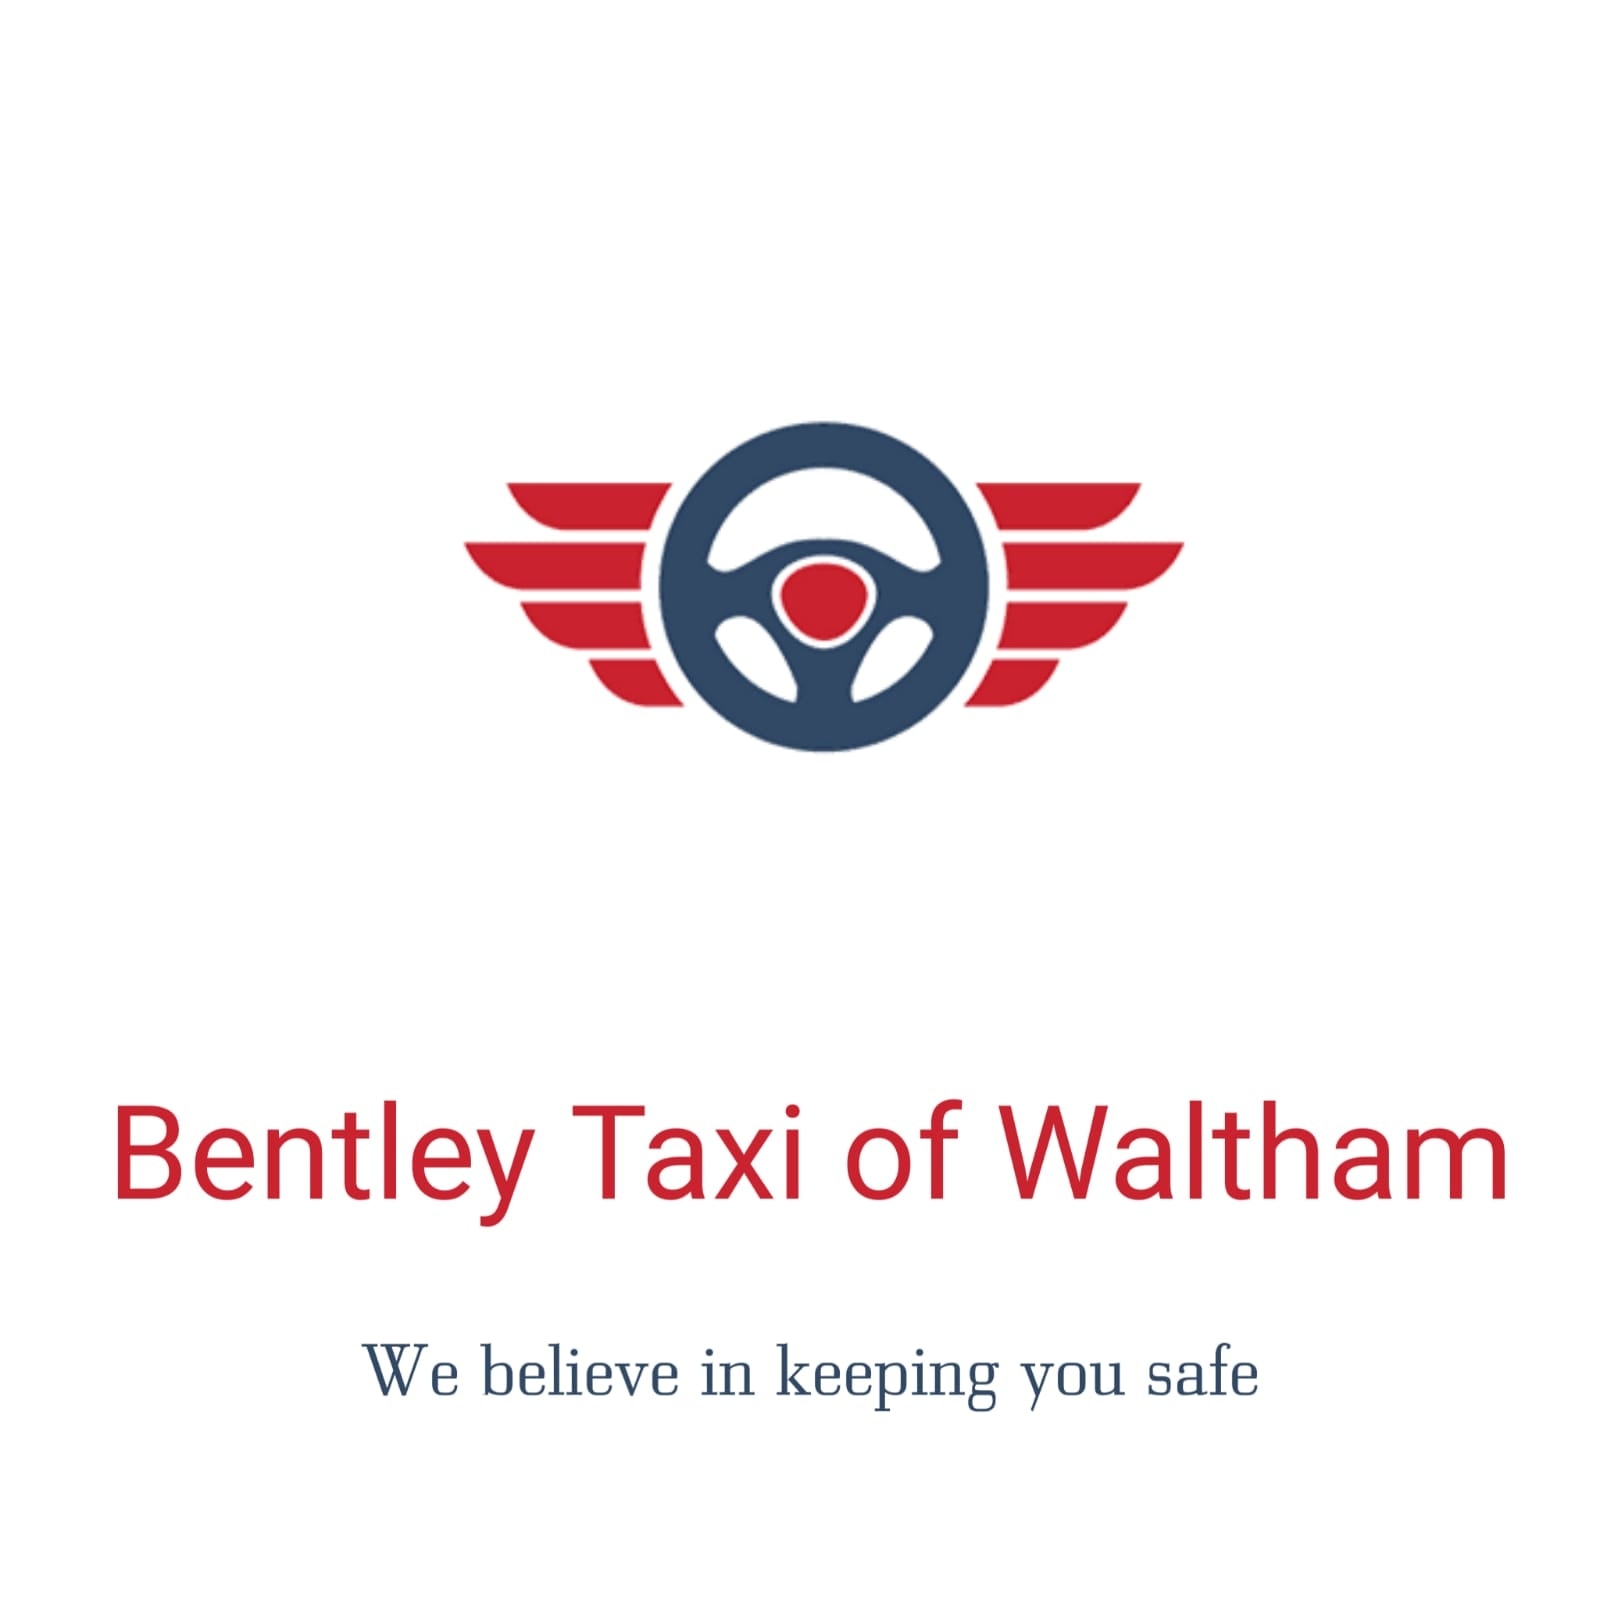 Company logo of Waltham taxi